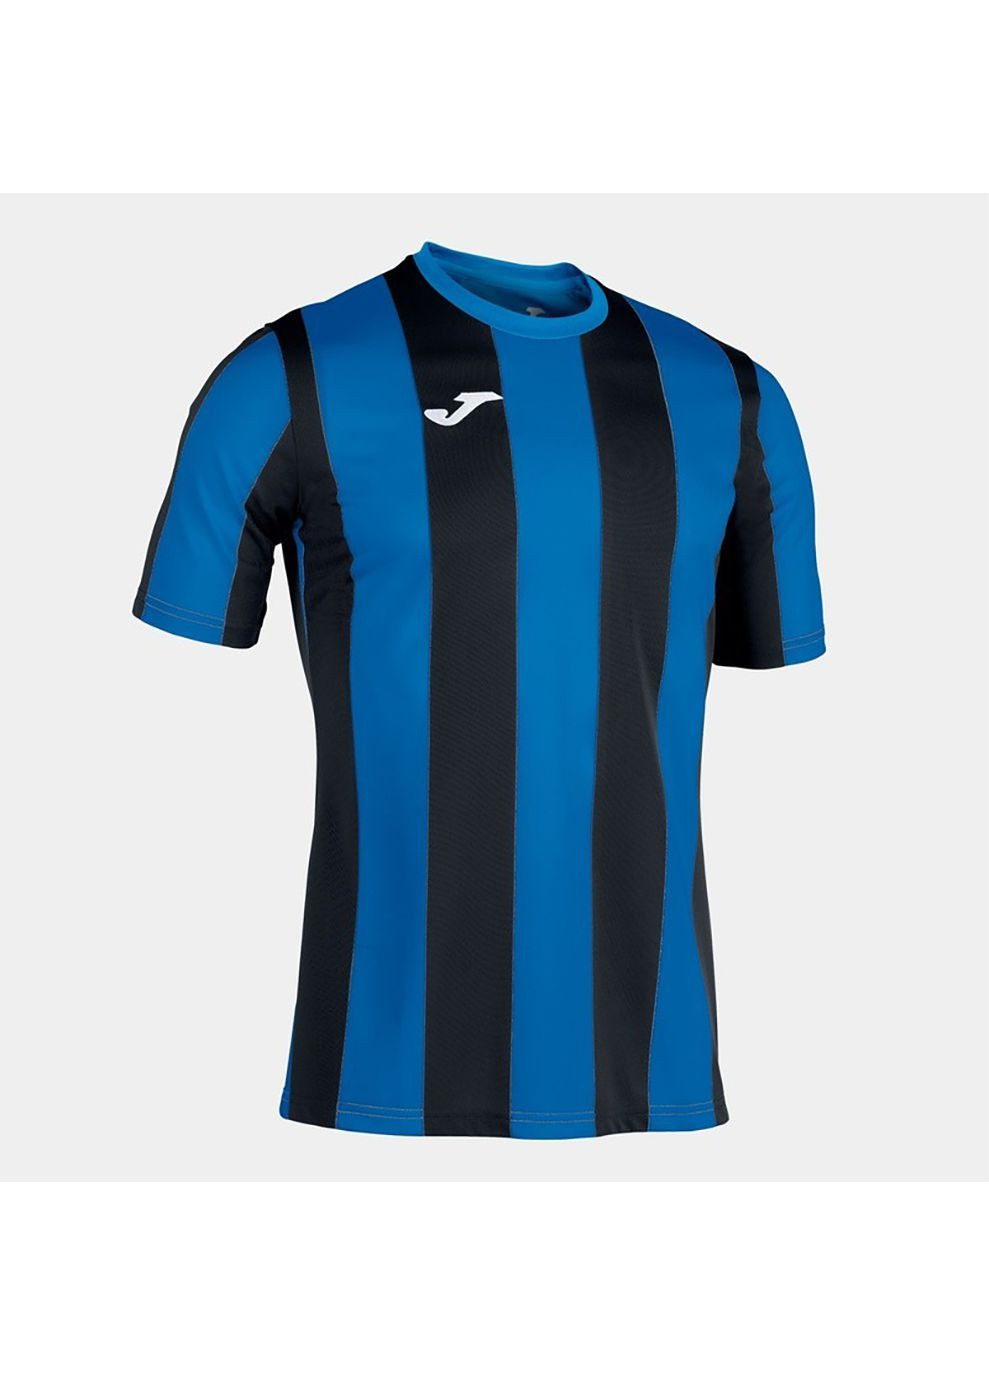 Комбінована футболка inter t-shirt royal-black s/s чорний,синій 101287.701 Joma